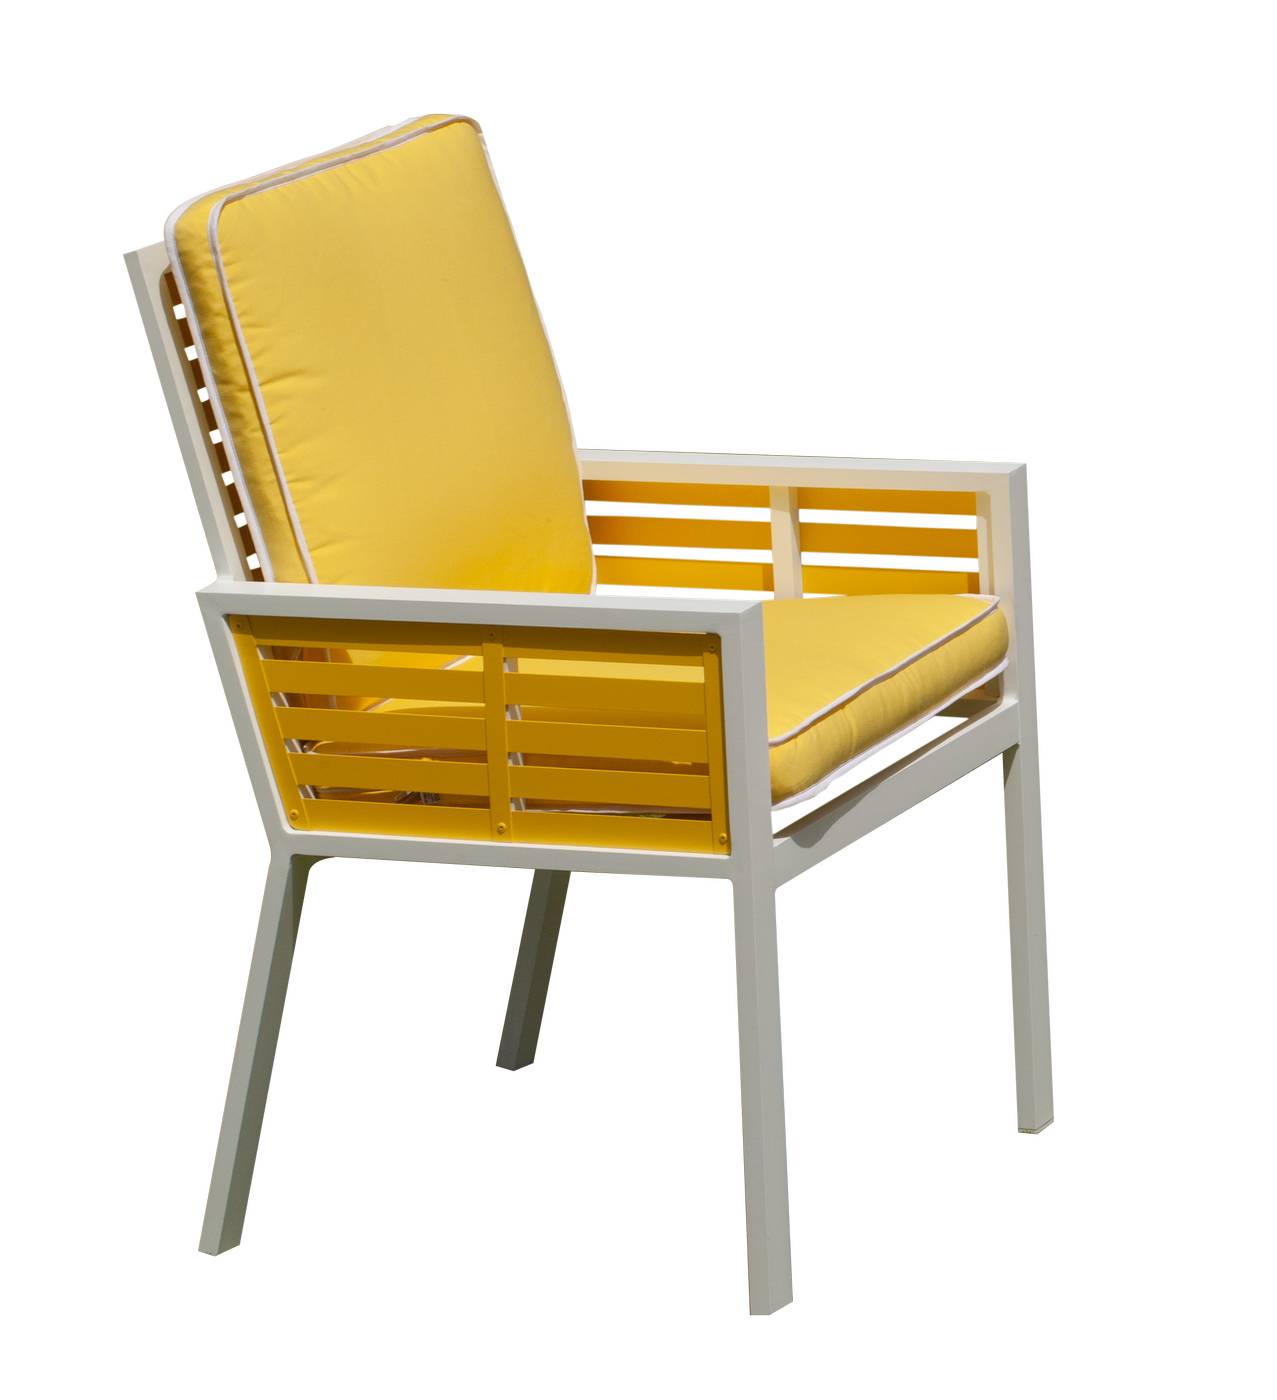 Sillón Bicolor Luarca-3 - Exclusivo sillón de comedor de aluminio bicolor. Con cómodos cojines asiento y respaldo desenfundables.